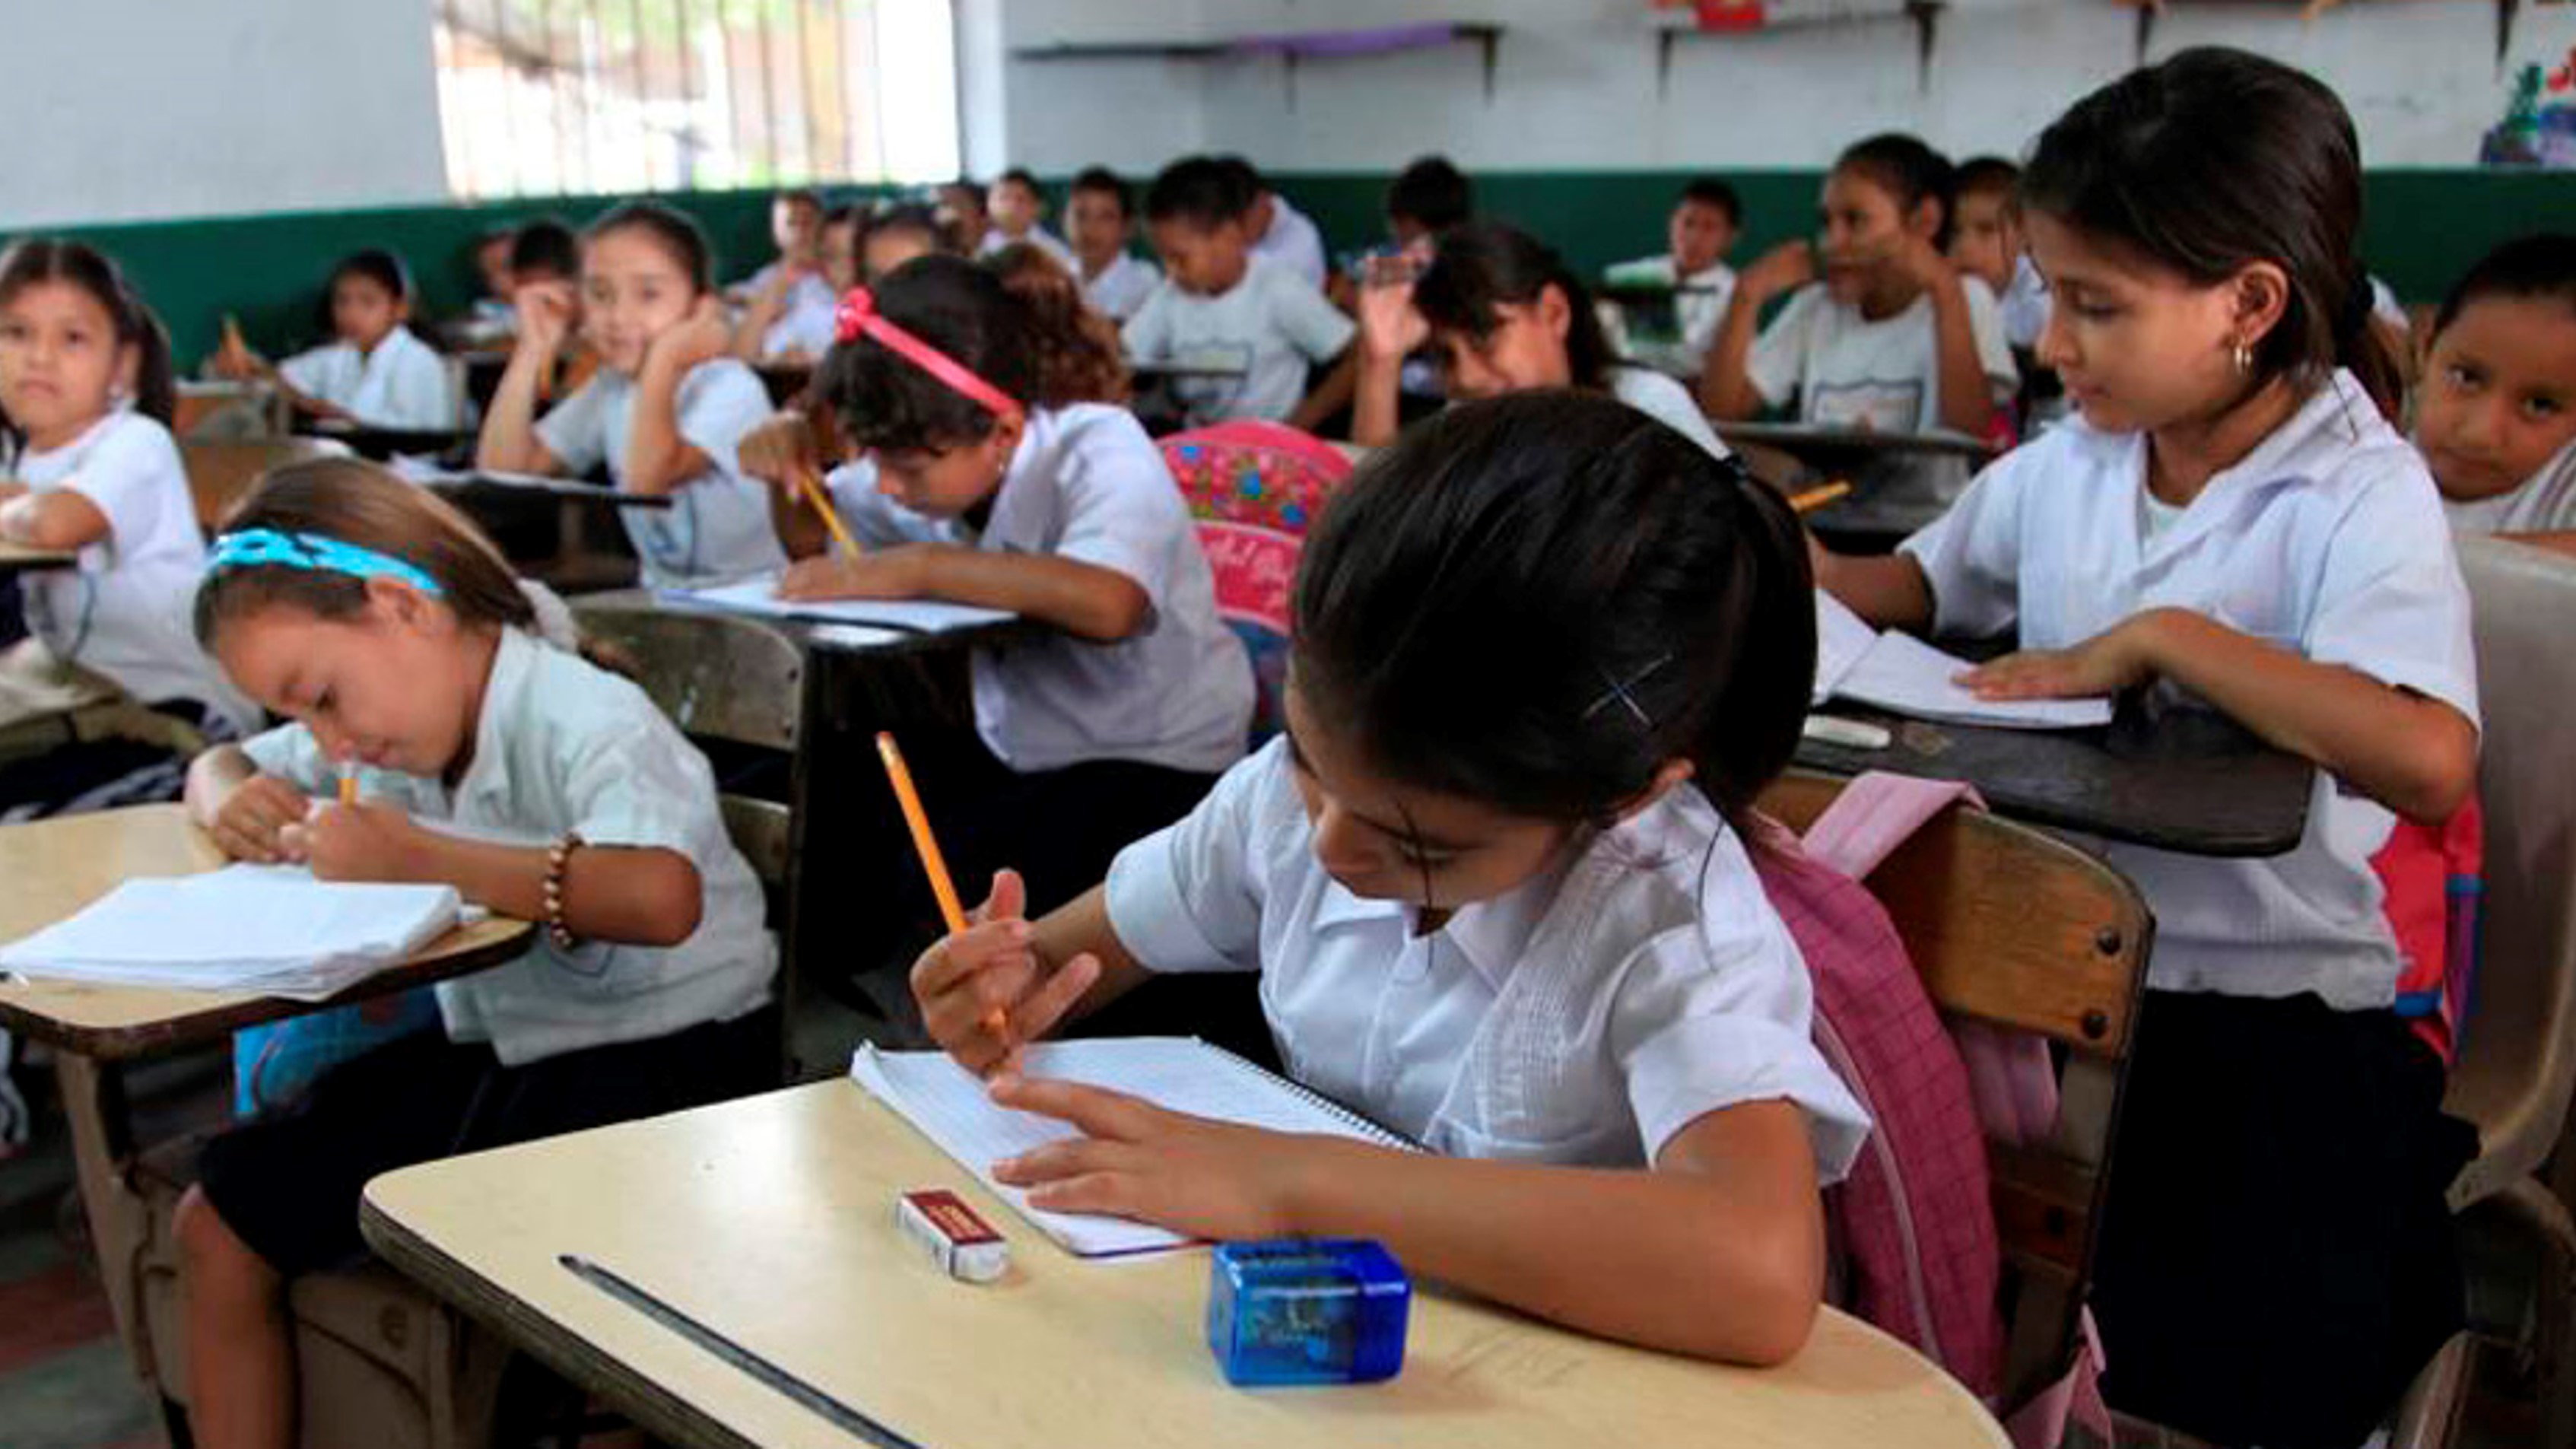 UNESCO insta a repensar la educación tras covid-19 en América Latina y el Caribe